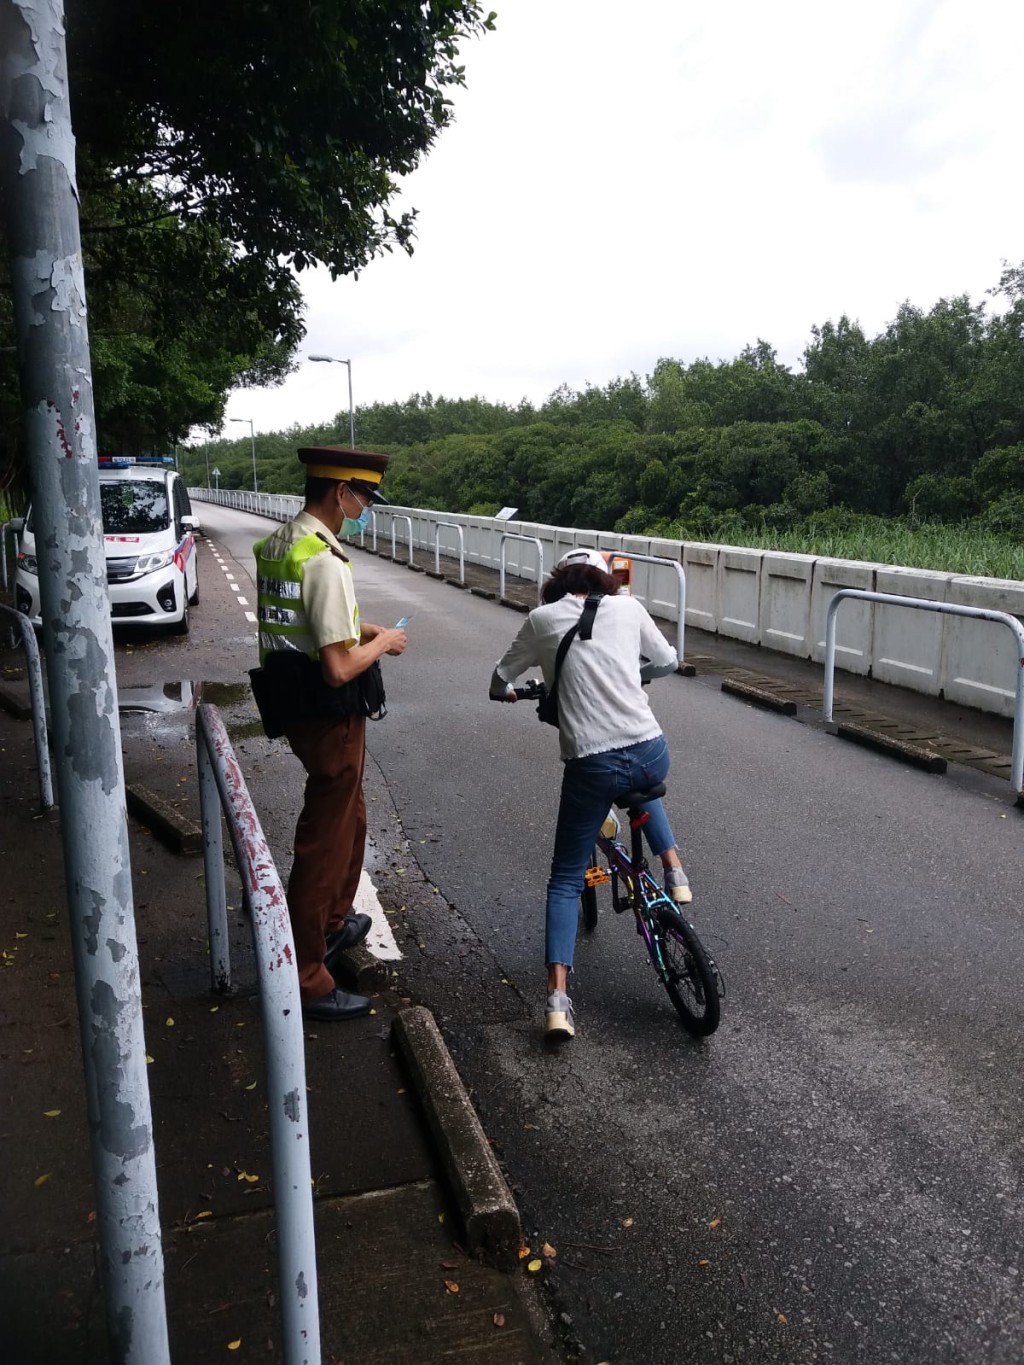 交通督導員亦有參與截查踏單車人士的行動。 警方提供